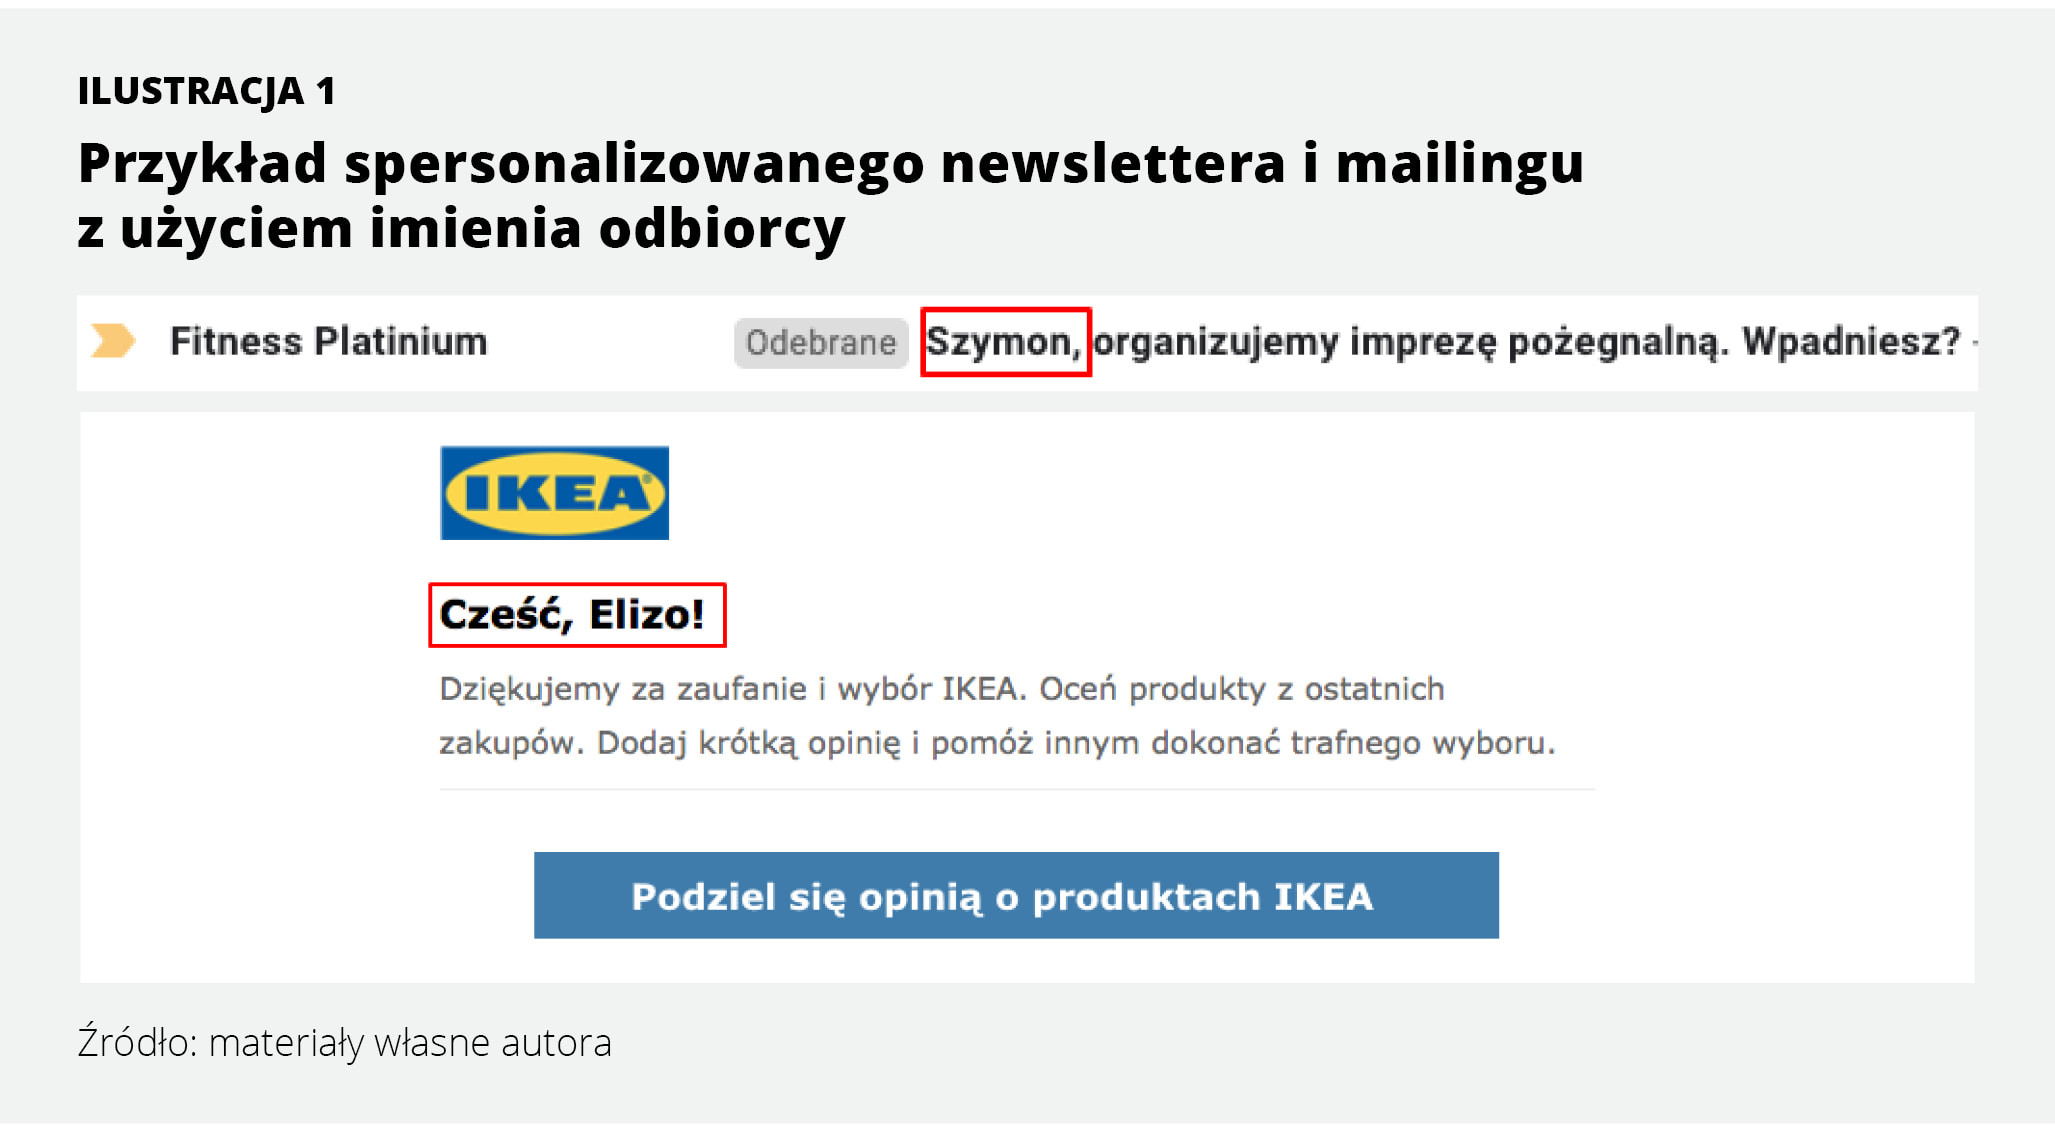 Przykład spersonalizowanego newslettera i mailingu z użyciem imienia odbiorcy